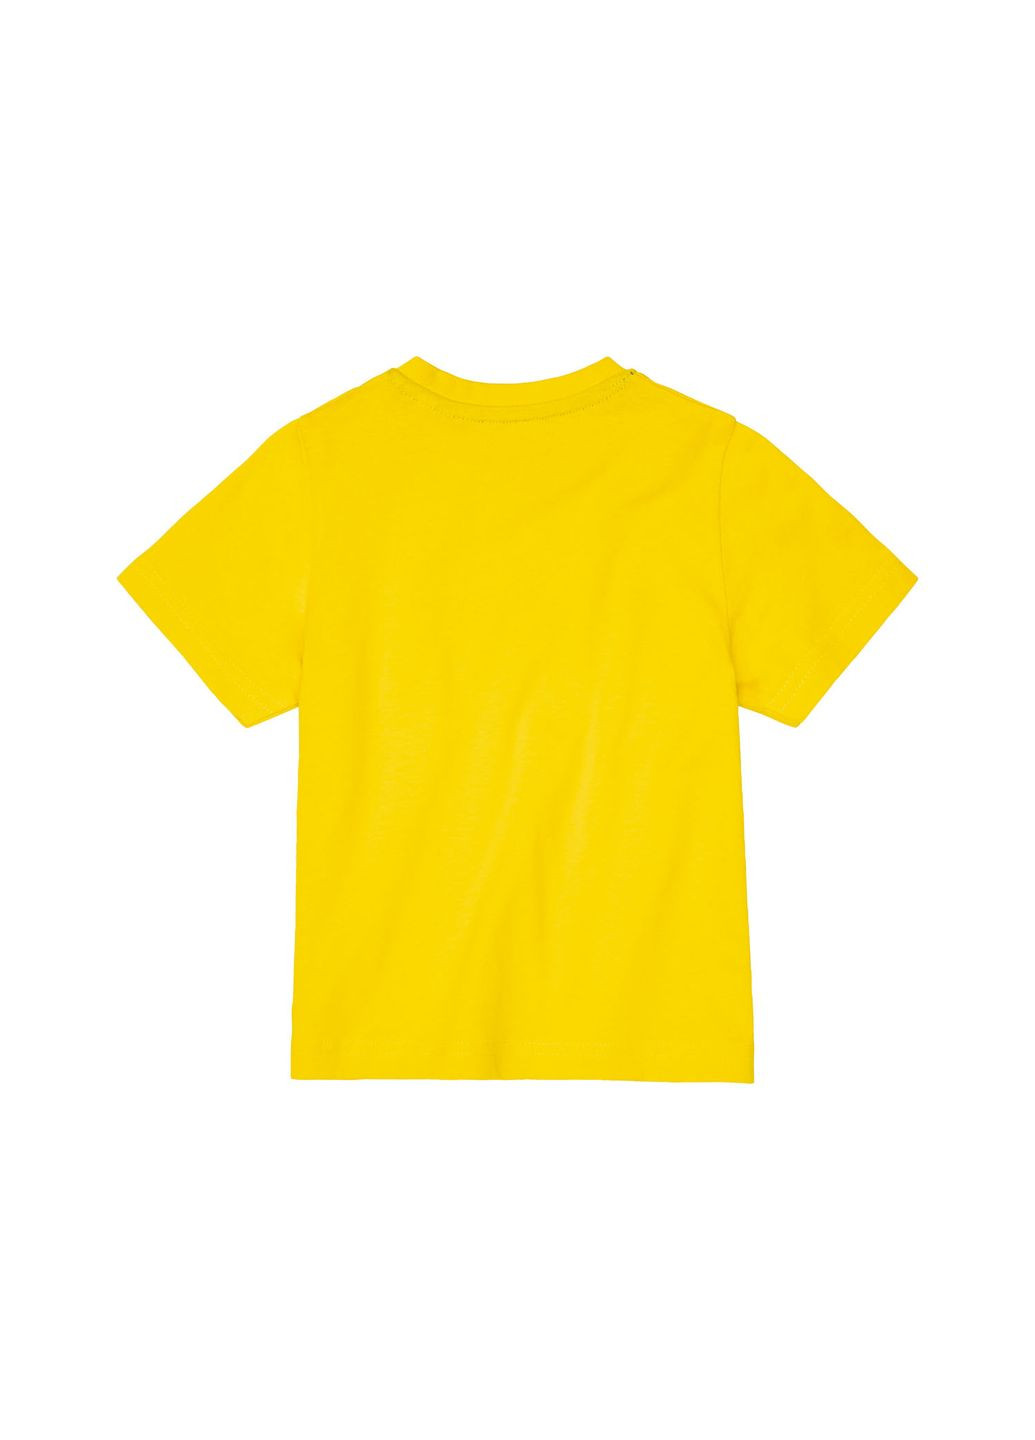 Жовта демісезонна футболка бавовняна для хлопчика 372241 жовтий Lupilu